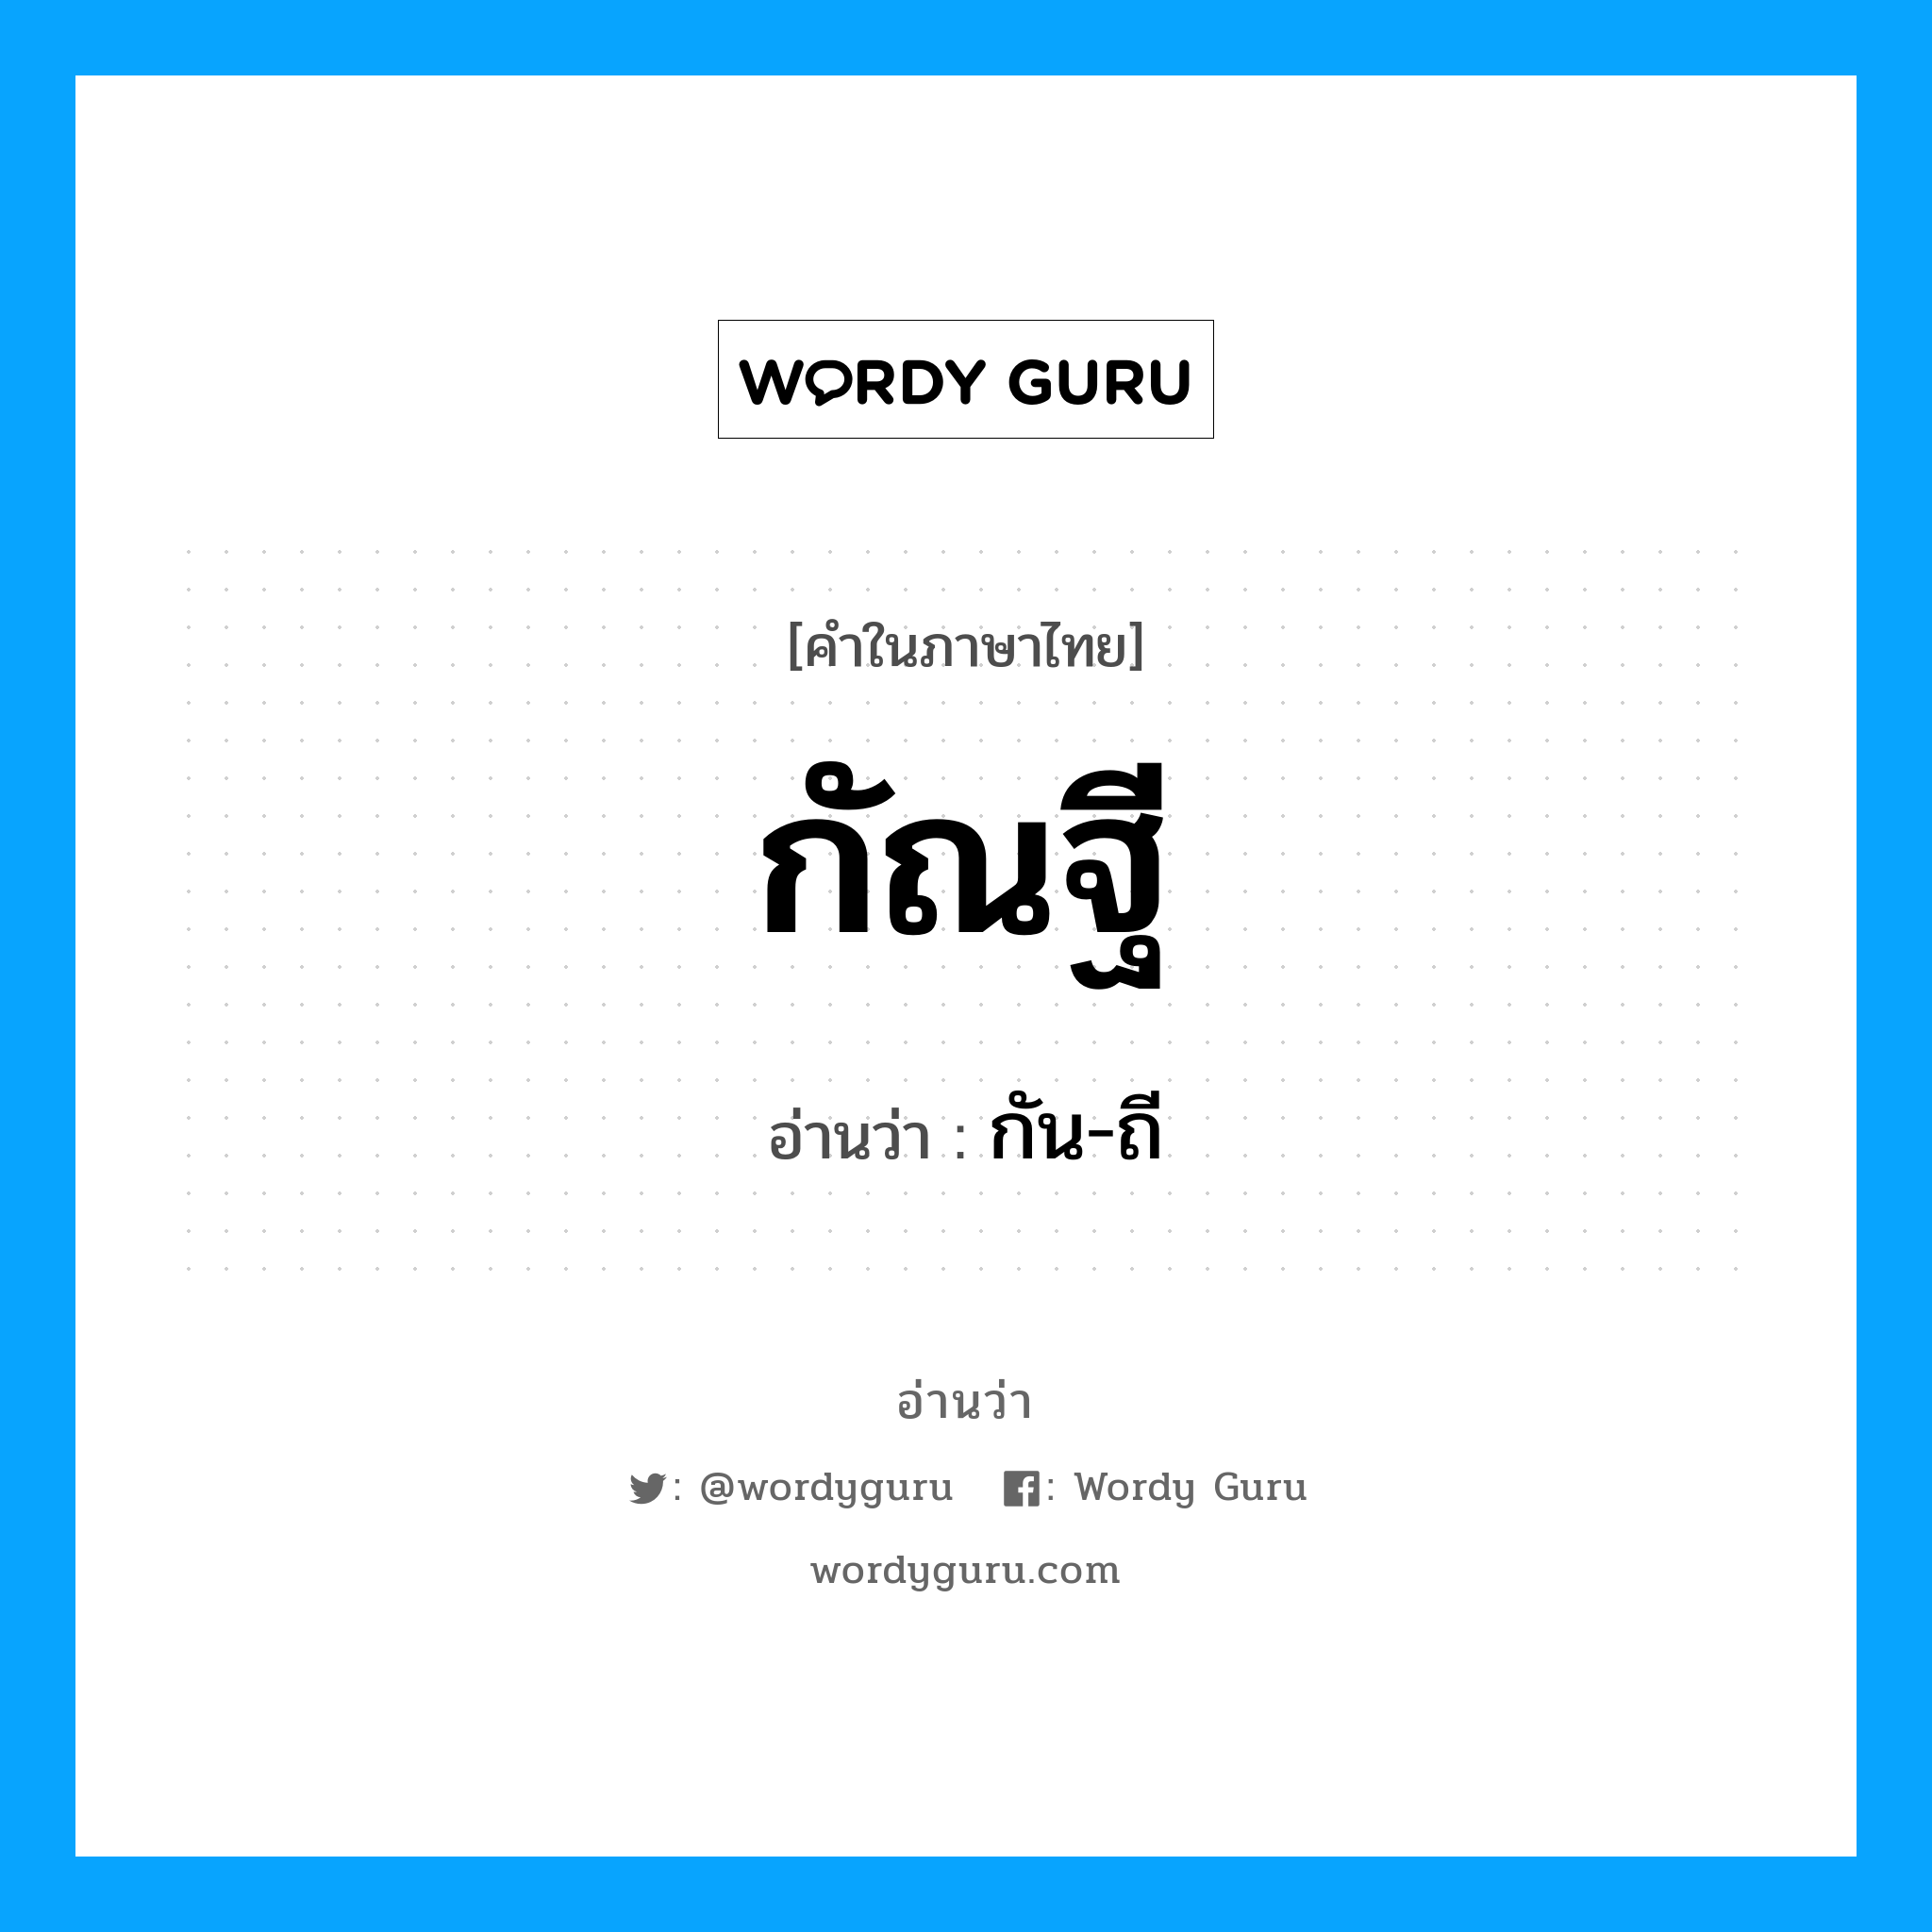 กัน-ถี เป็นคำอ่านของคำไหน?, คำในภาษาไทย กัน-ถี อ่านว่า กัณฐี